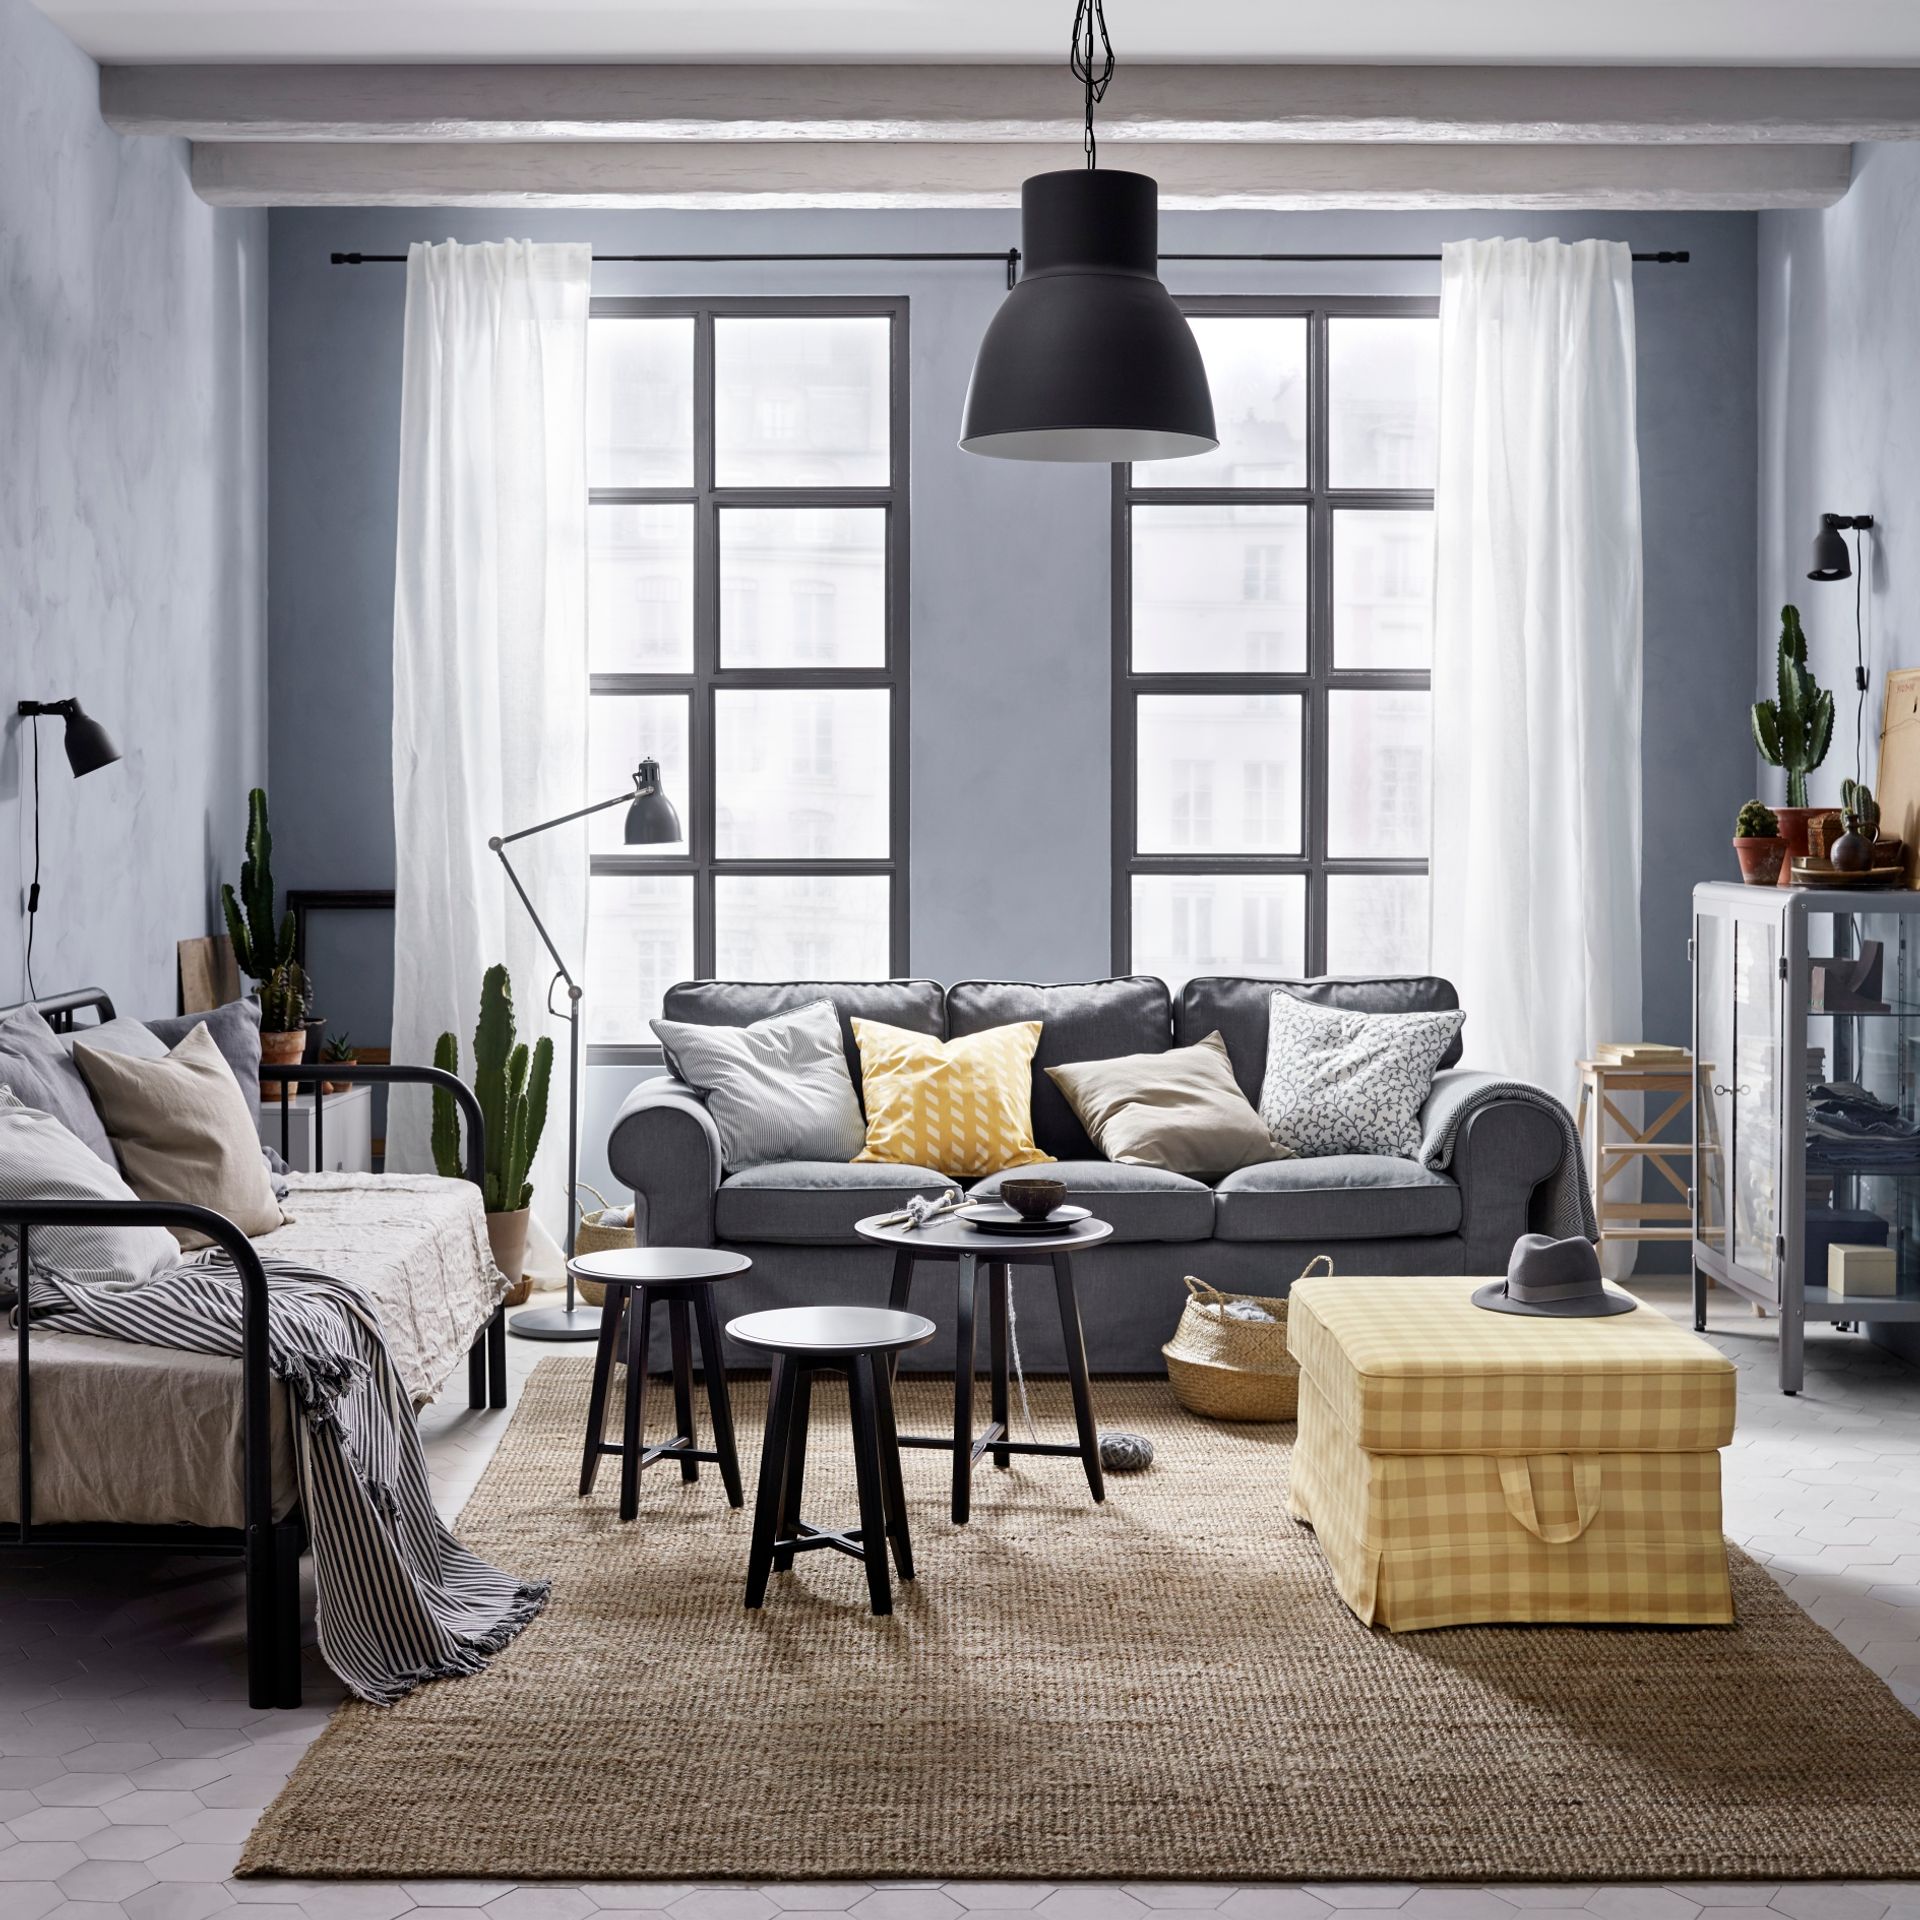 Las claves para elegir el sofá perfecto según tu estilo de vida